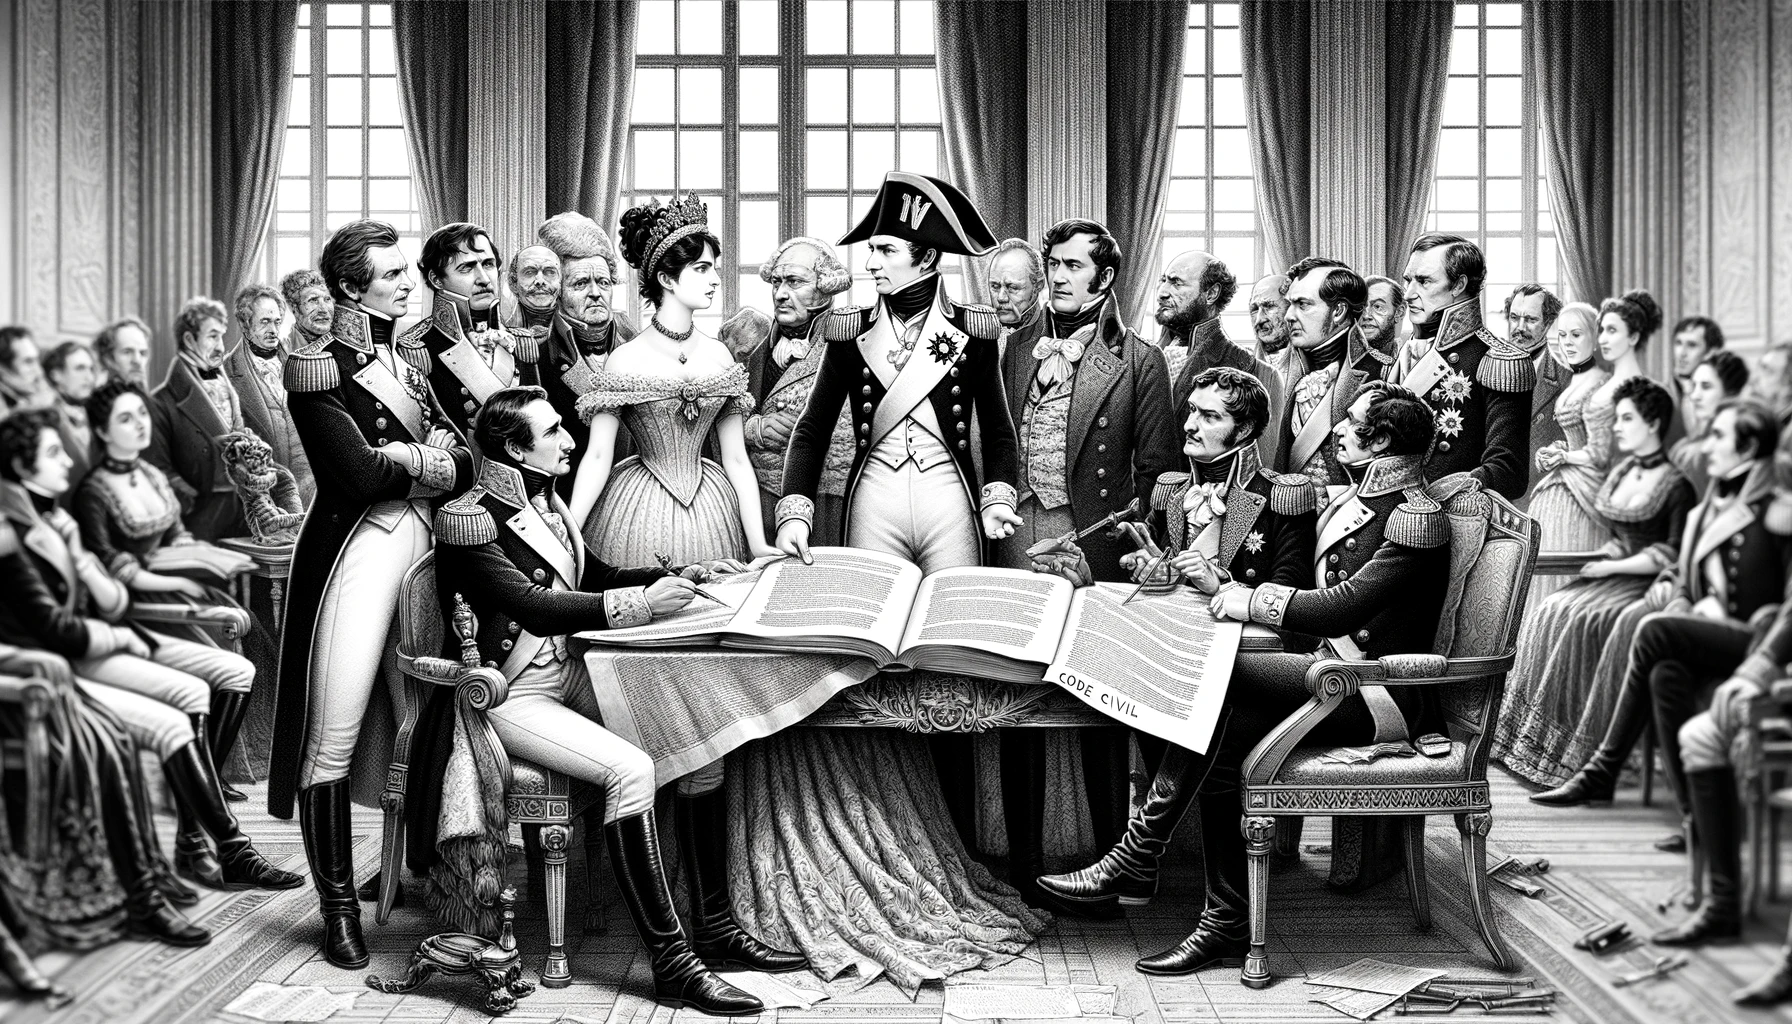 Künstlich-künstlerische Darstellung in schwarzer Tusche einer Gruppe historischer Figuren rund um Napoleon, Josephine und den Code civil des Français als Einführung der Idee gleicher Rechte für alle.